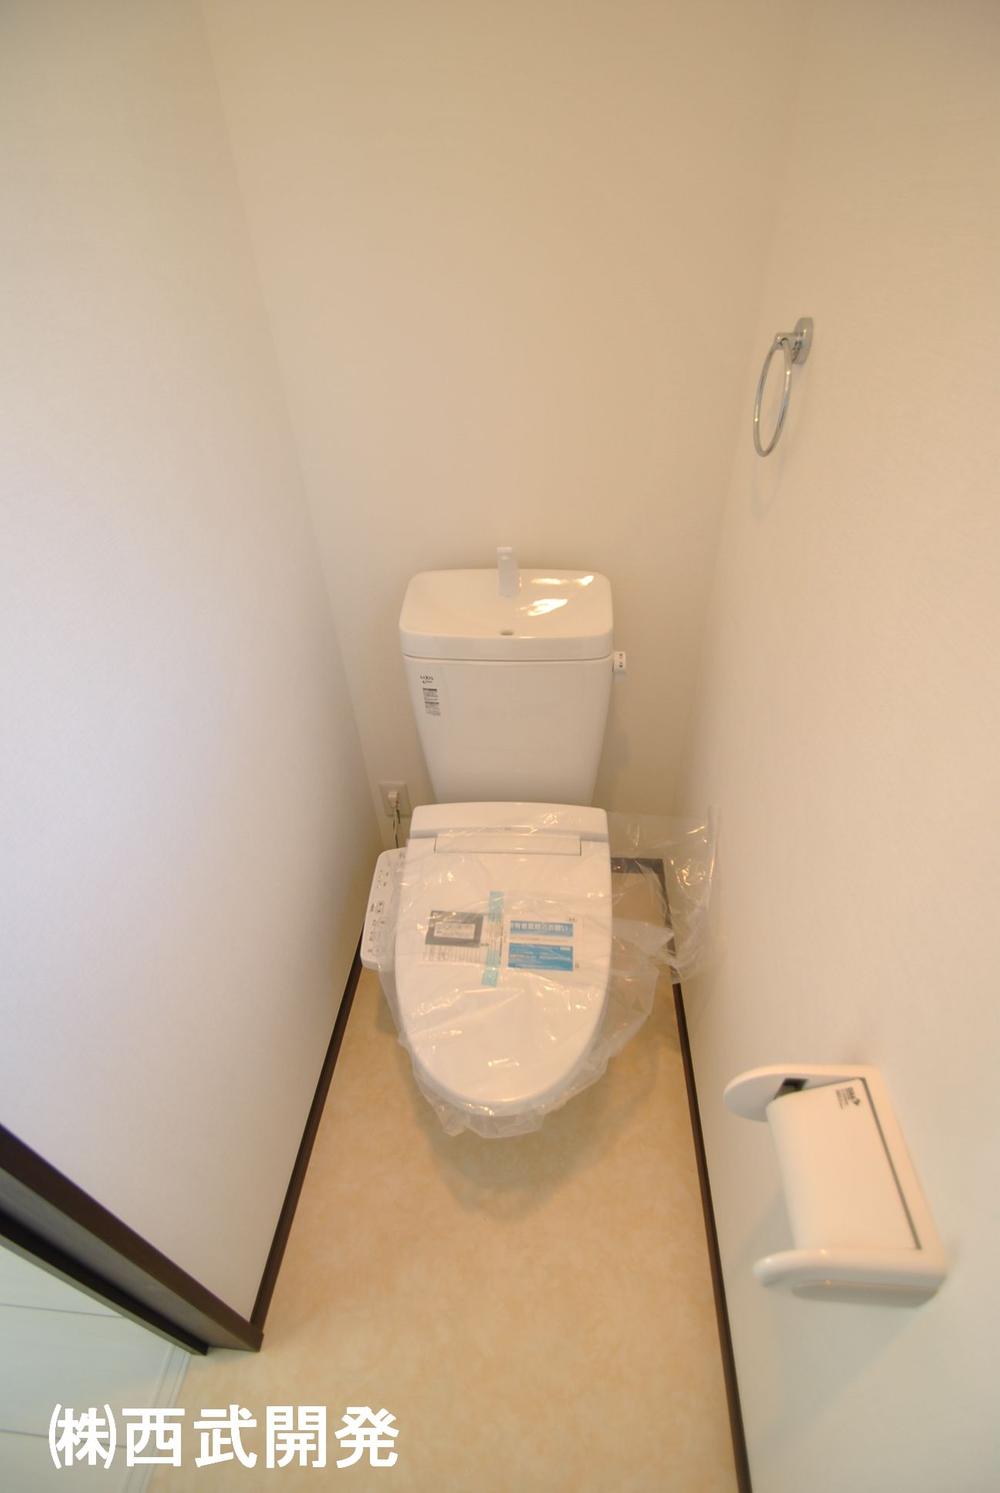 Toilet. Indoor (10 May 2013) Shooting Second floor